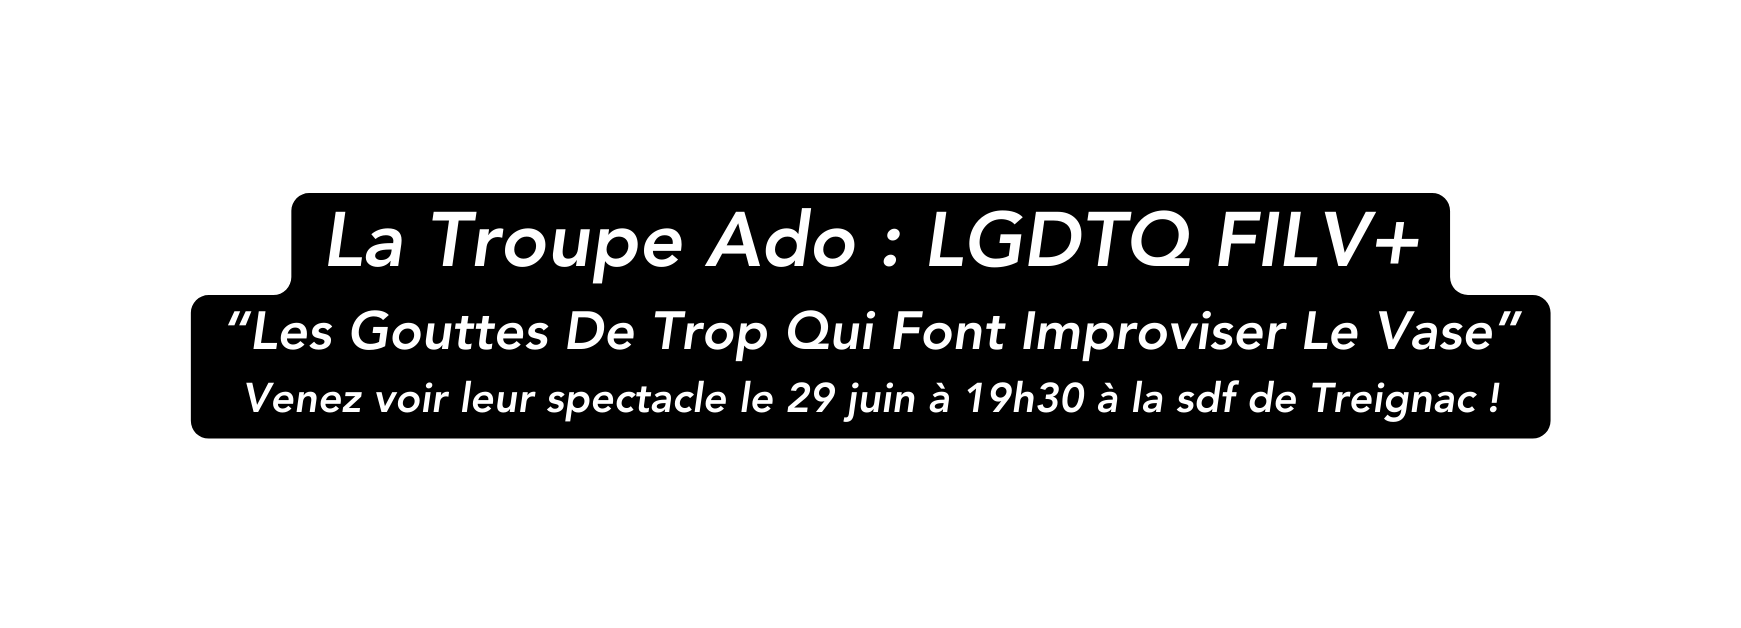 La Troupe Ado LGDTQ FILV Les Gouttes De Trop Qui Font Improviser Le Vase Venez voir leur spectacle le 29 juin à 19h30 à la sdf de Treignac